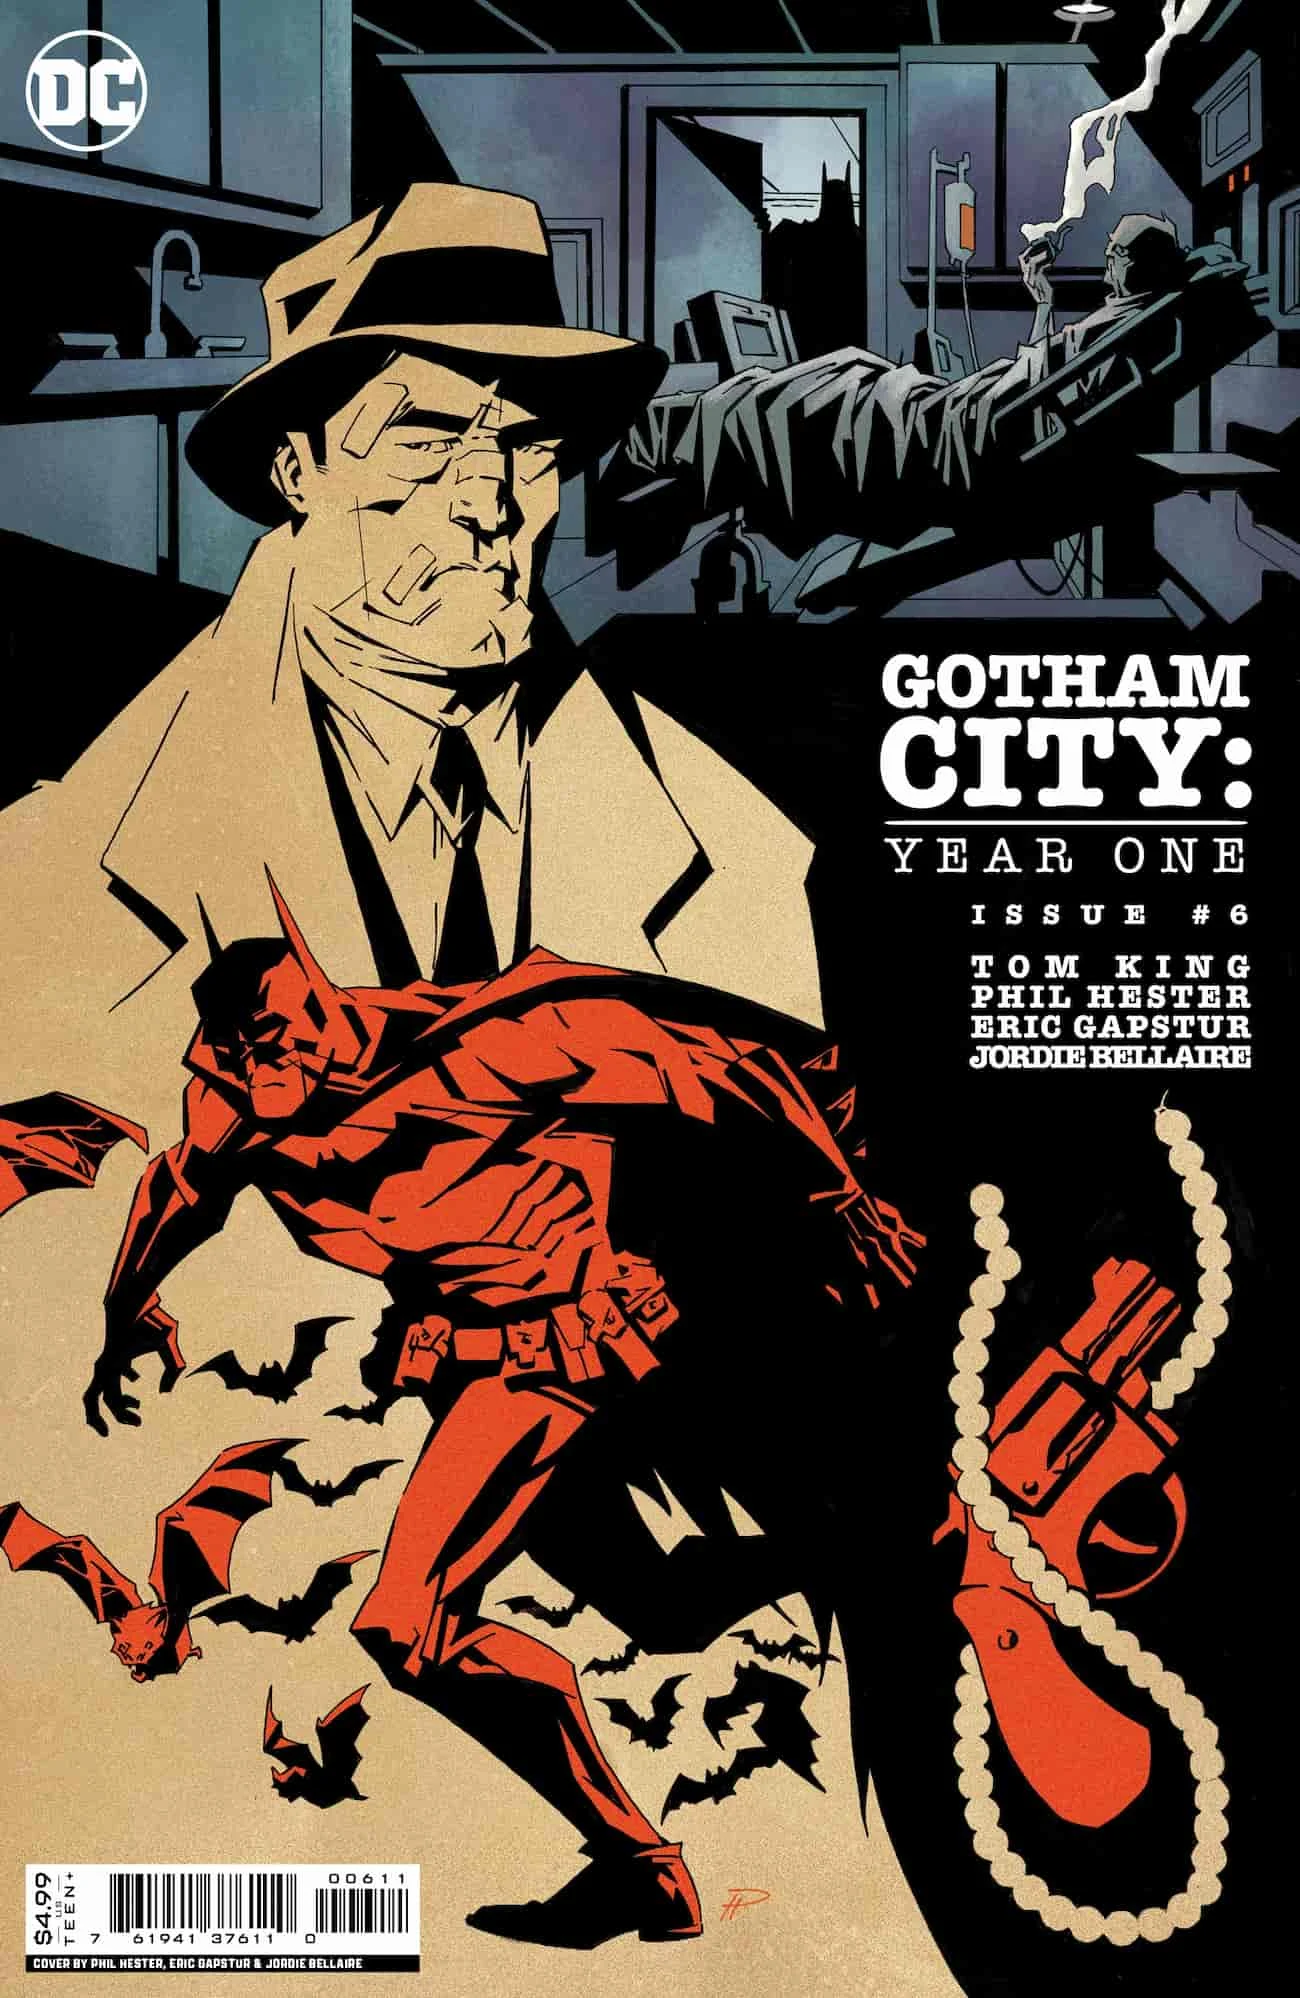 Gotham, Batman, comics, DC Comics